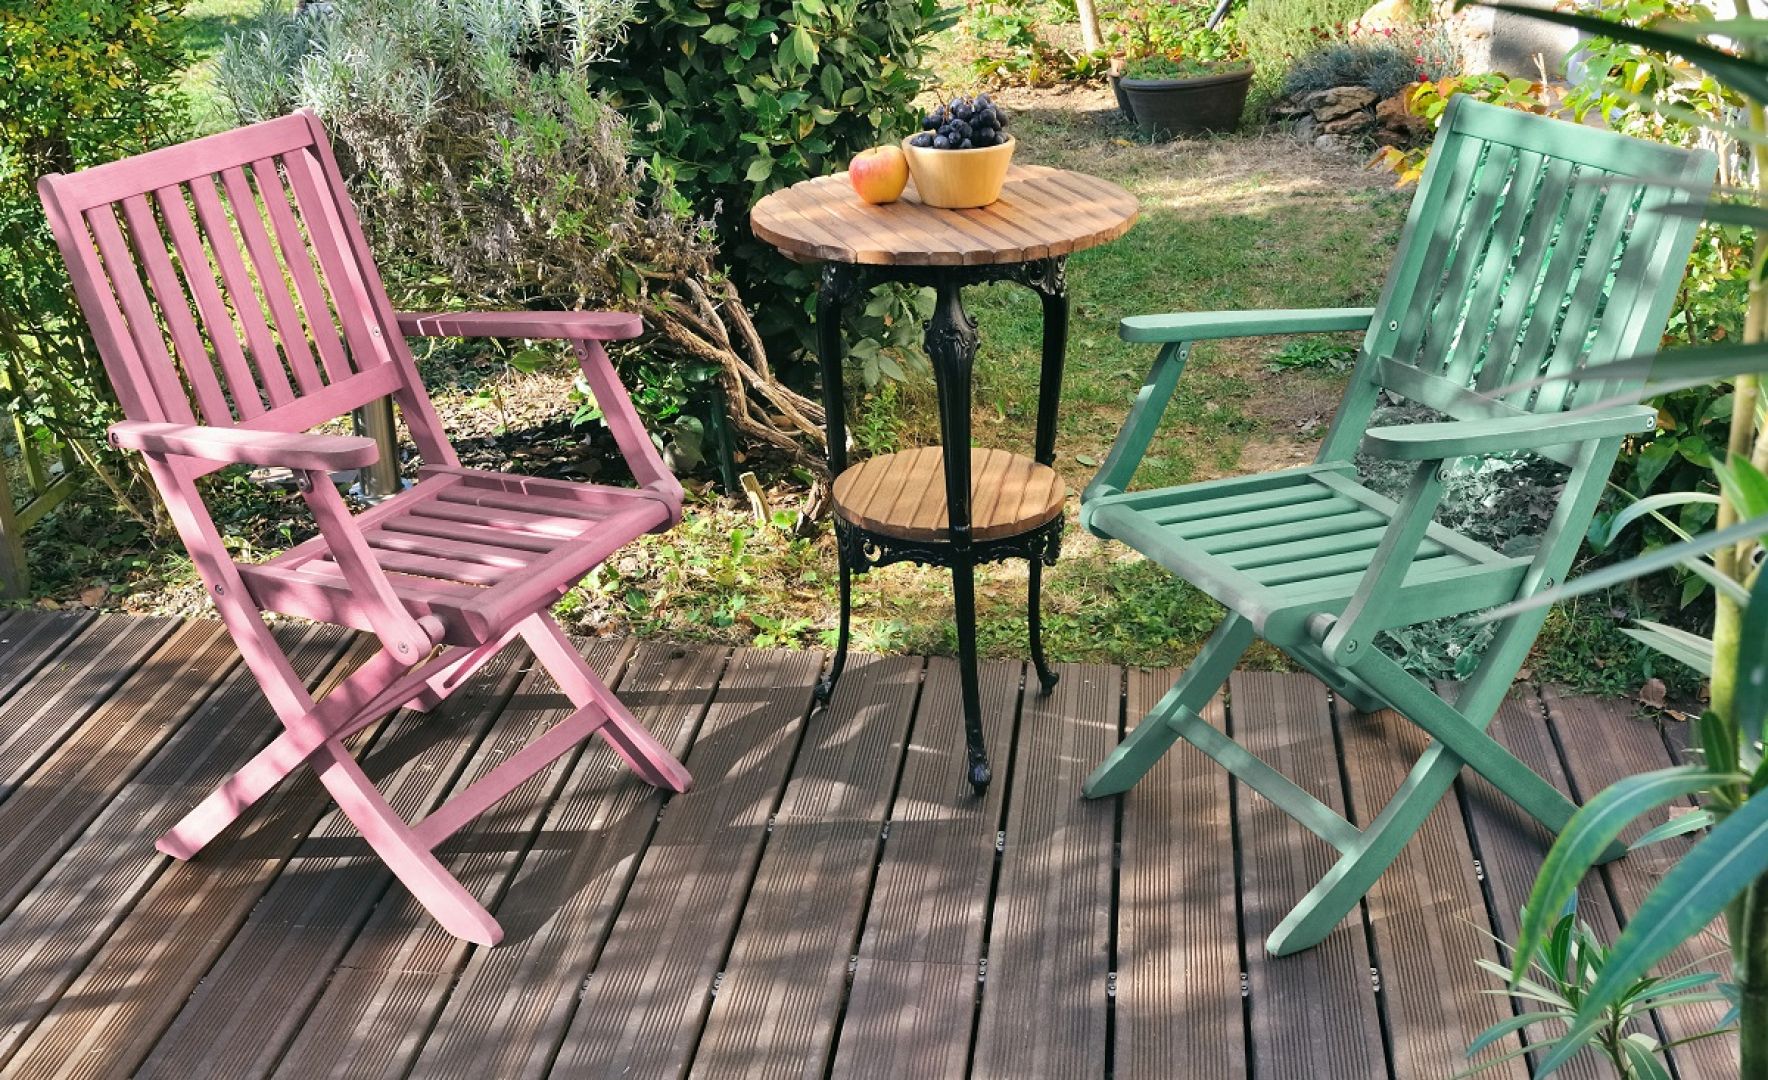 Szczególnie urokliwą ozdobą ogrodu będą wykonane z tego surowca krzesła pomalowane w soczystych odcieniach Wave i Candy Pink z palety Beckers Designer Universal. Fot. Beckers